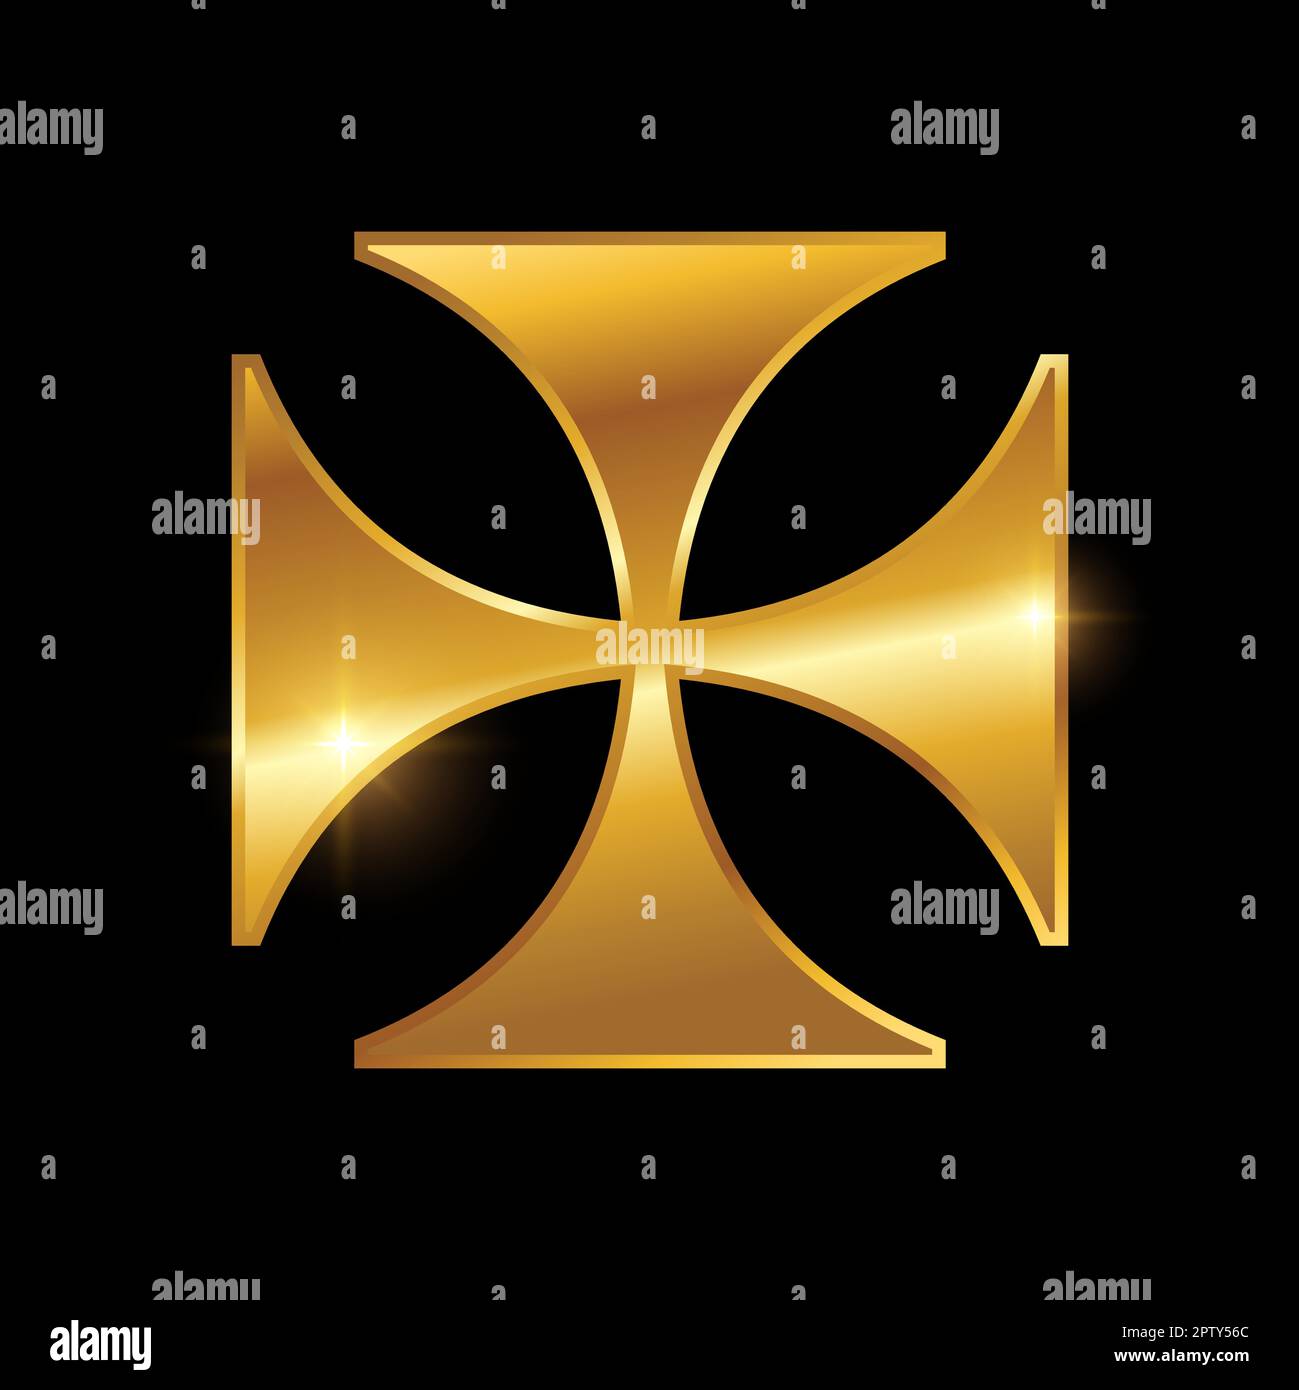 Golden Maltese Cross Logo Sign Stock Vector Image & Art - Alamy